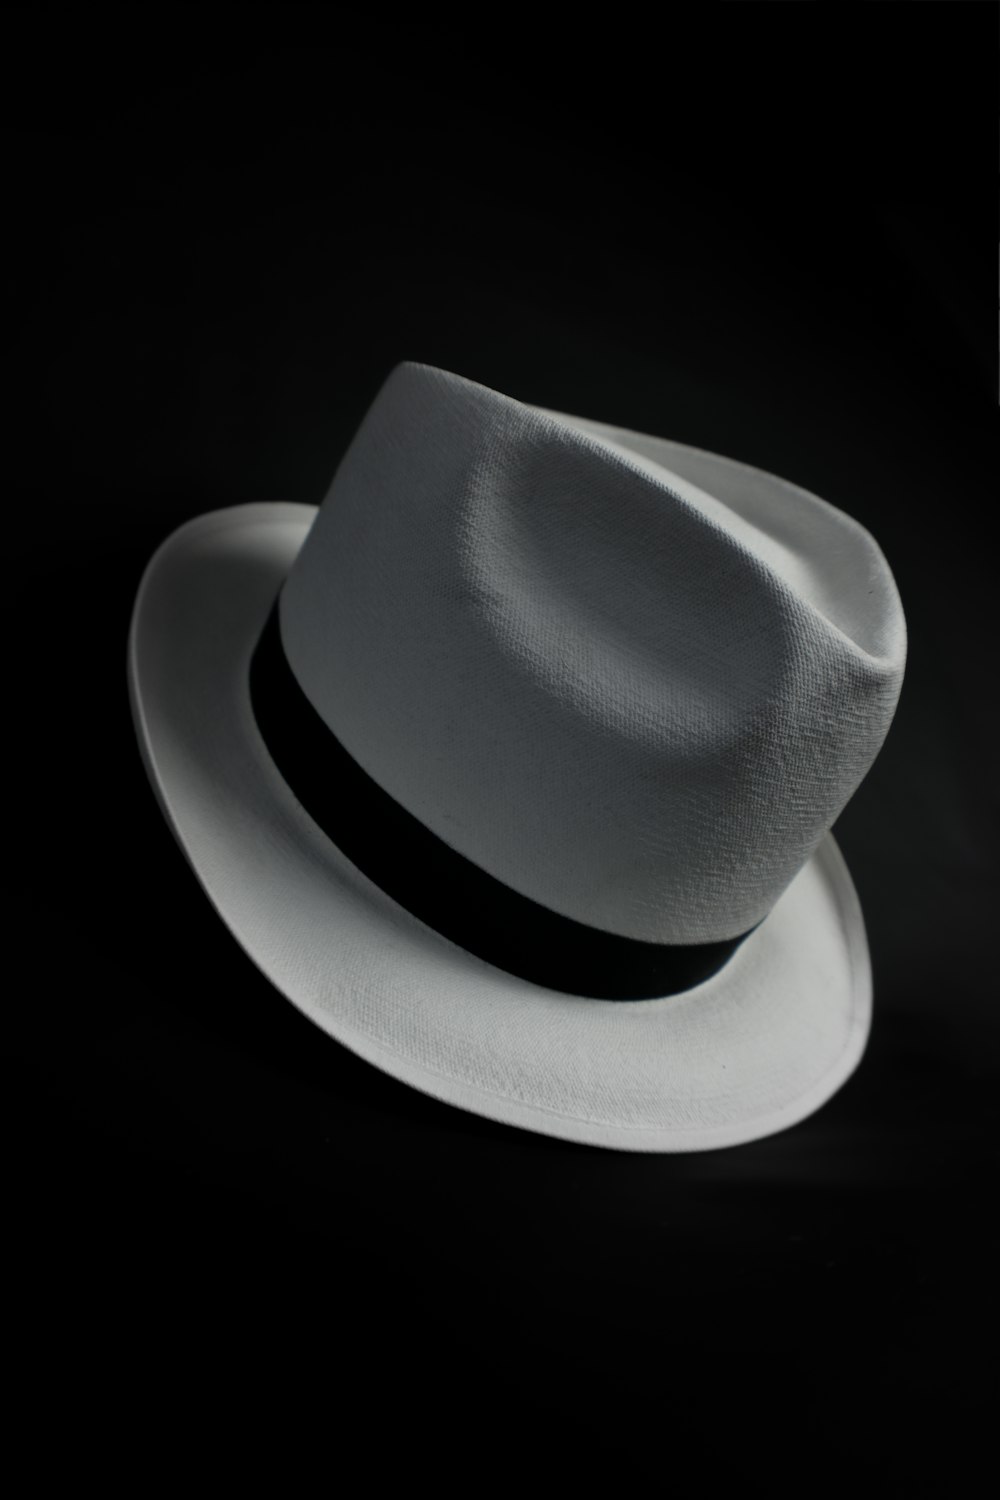 sombrero de vaquero blanco sobre fondo negro